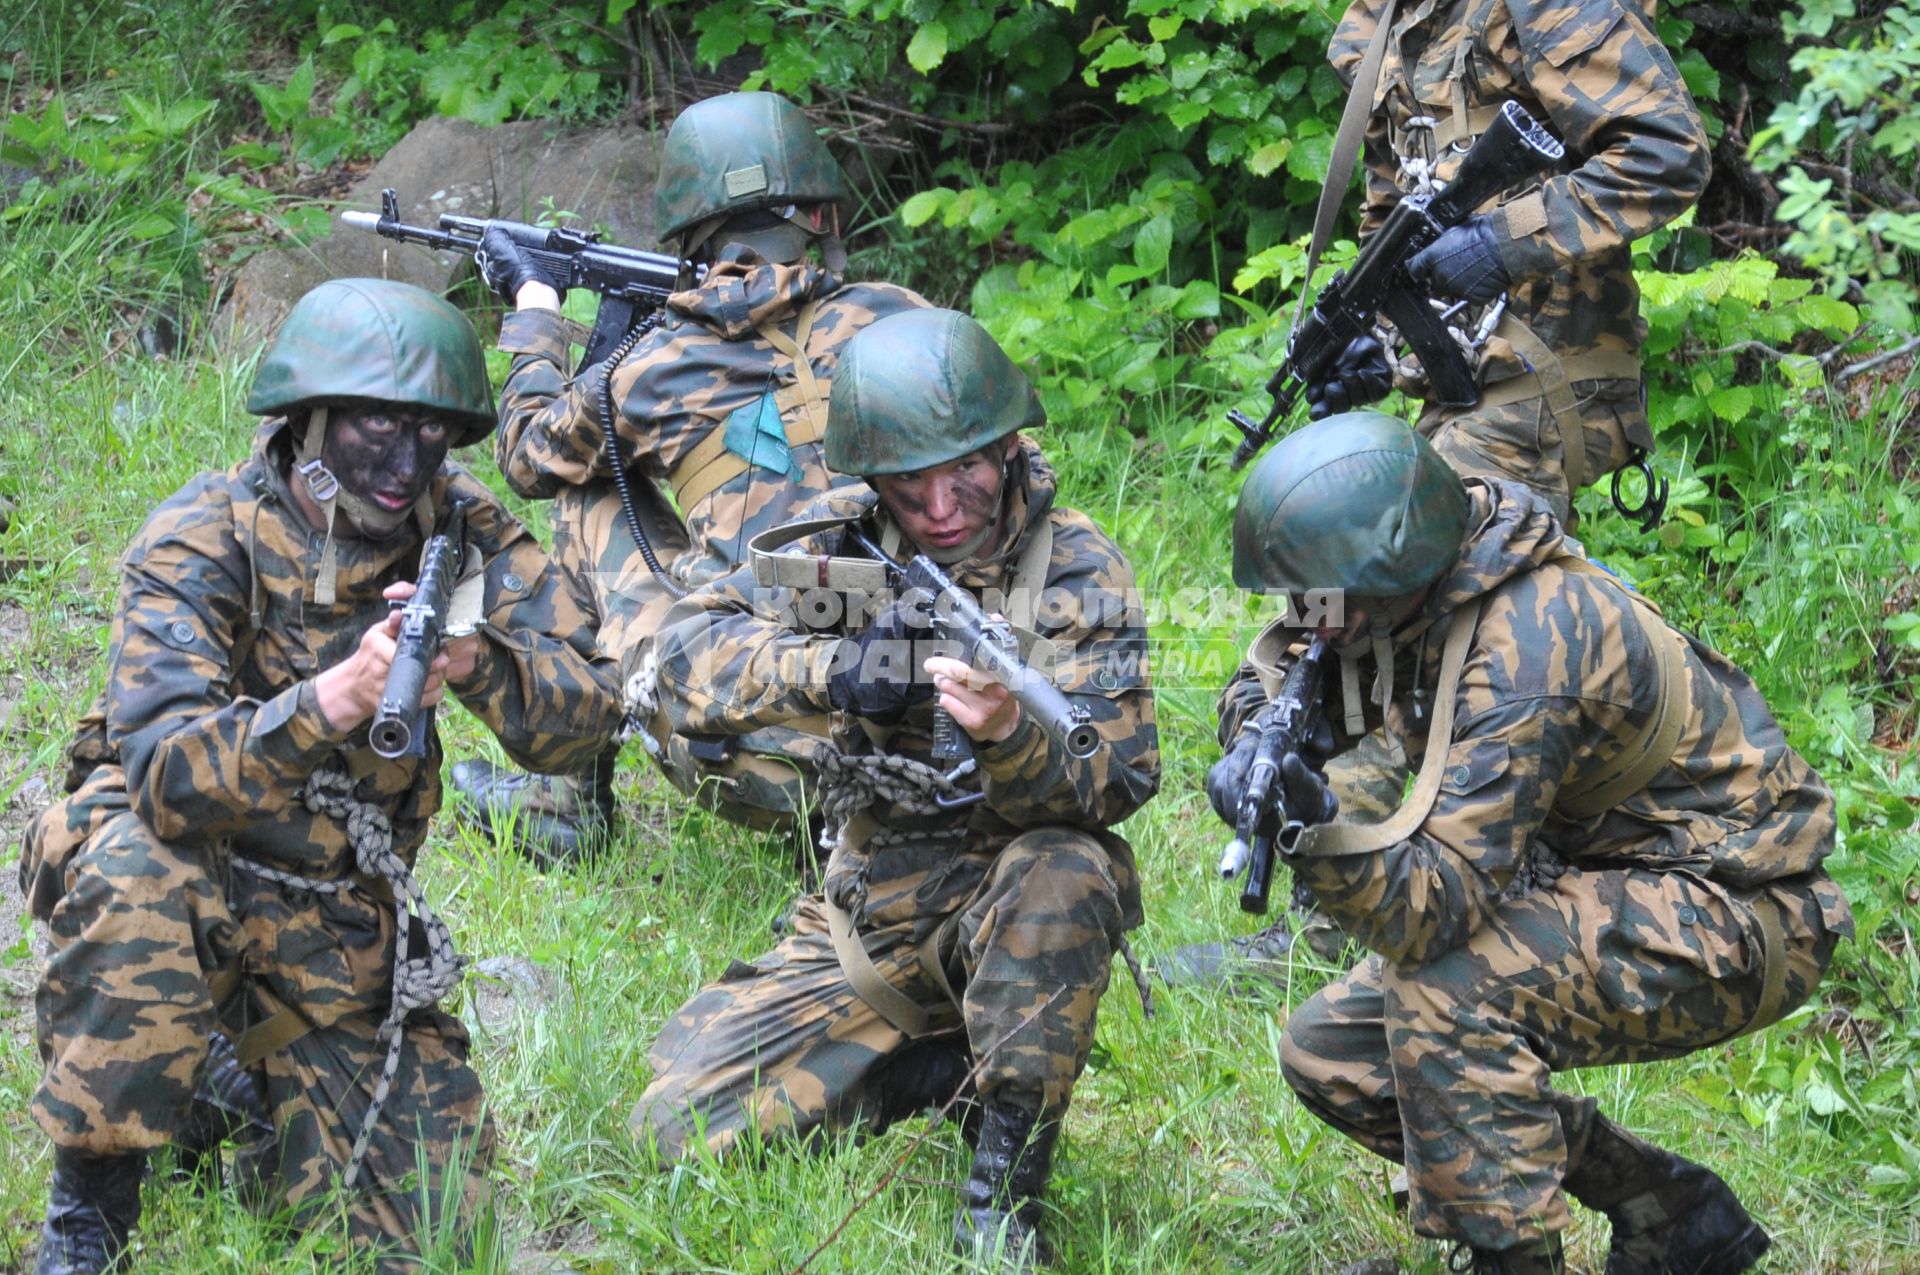 Сторожевая-2, станица Зеленчукская. Карачаево-Черкесия. Учения 34 отдельной мотострелковой бригады горной Южного военного округа. 23 июня 2011.